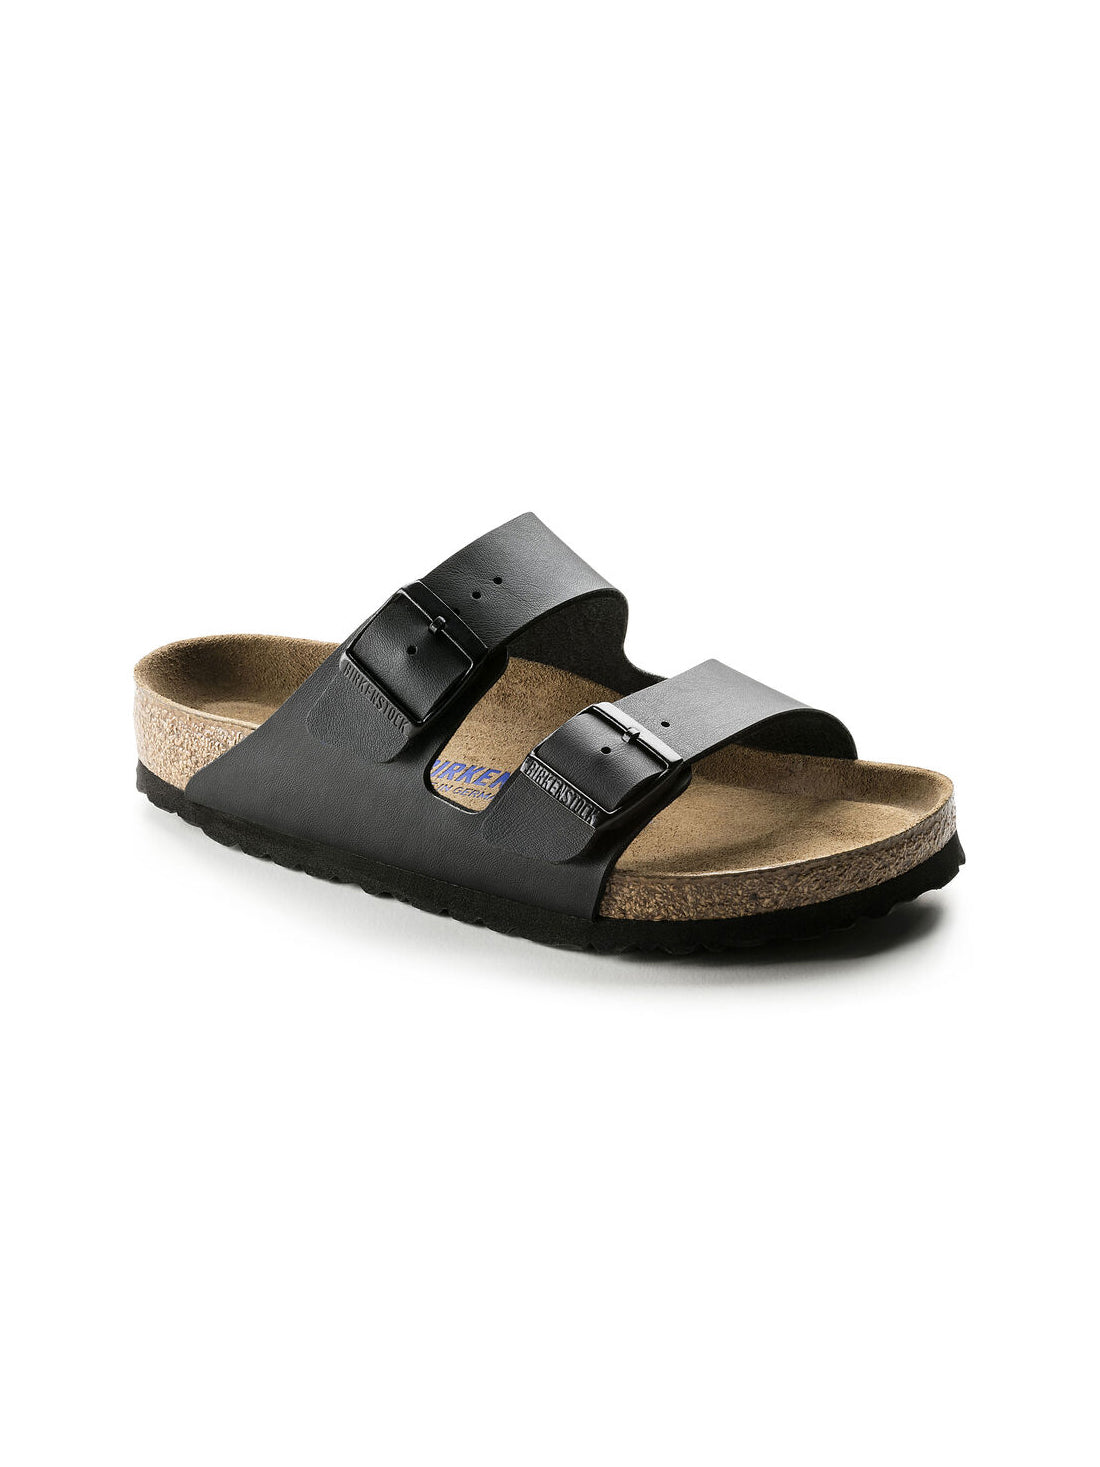 birkenstock arizona soft footbed sandal in birko-flor black regular